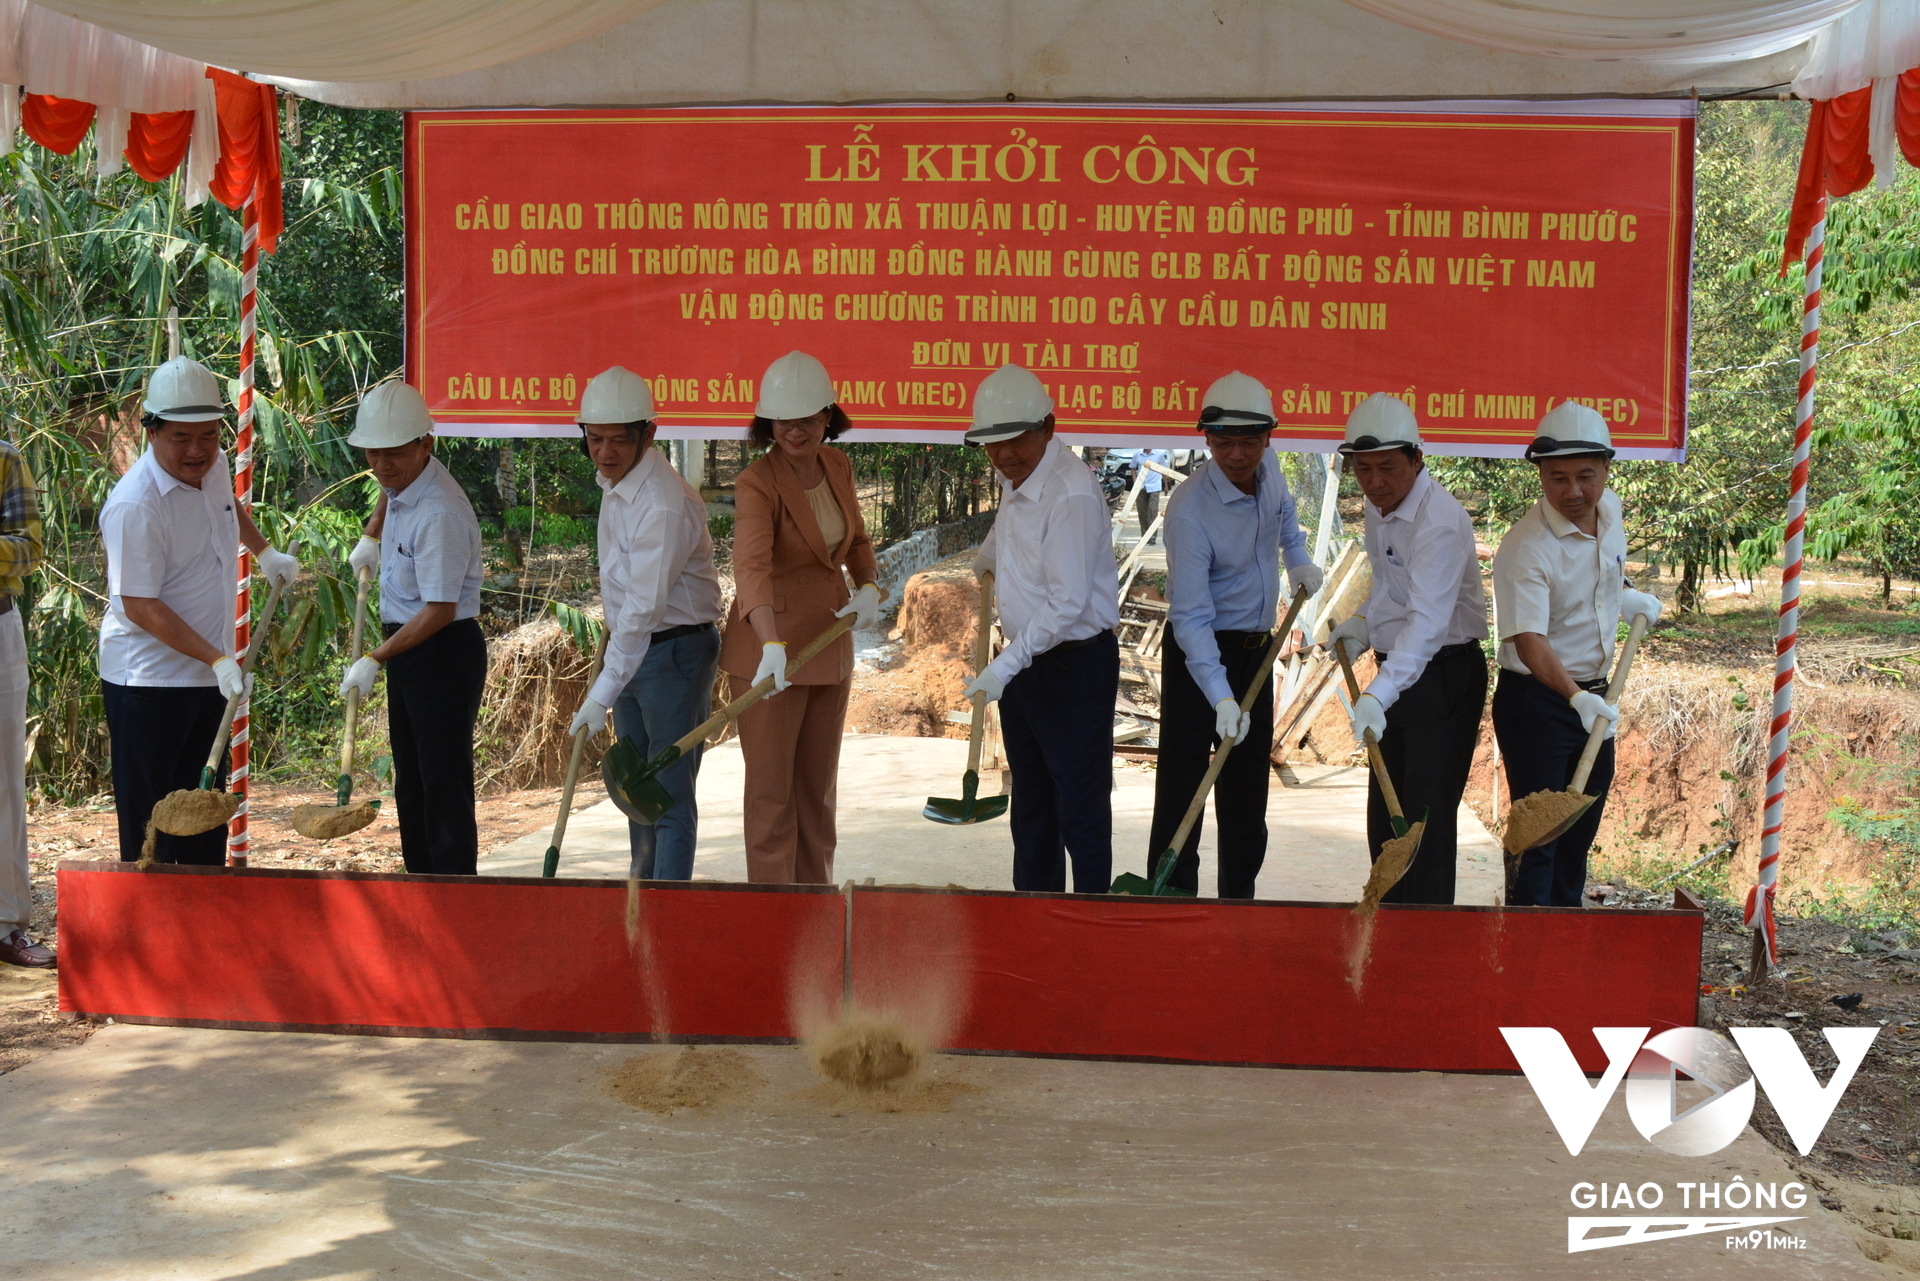 Các đại biểu tại lễ khởi công cây cầu dân sinh ở ấp Thuận Bình, xã Thuận Lợi, huyện Đồng Phú, tỉnh Bình Phước.